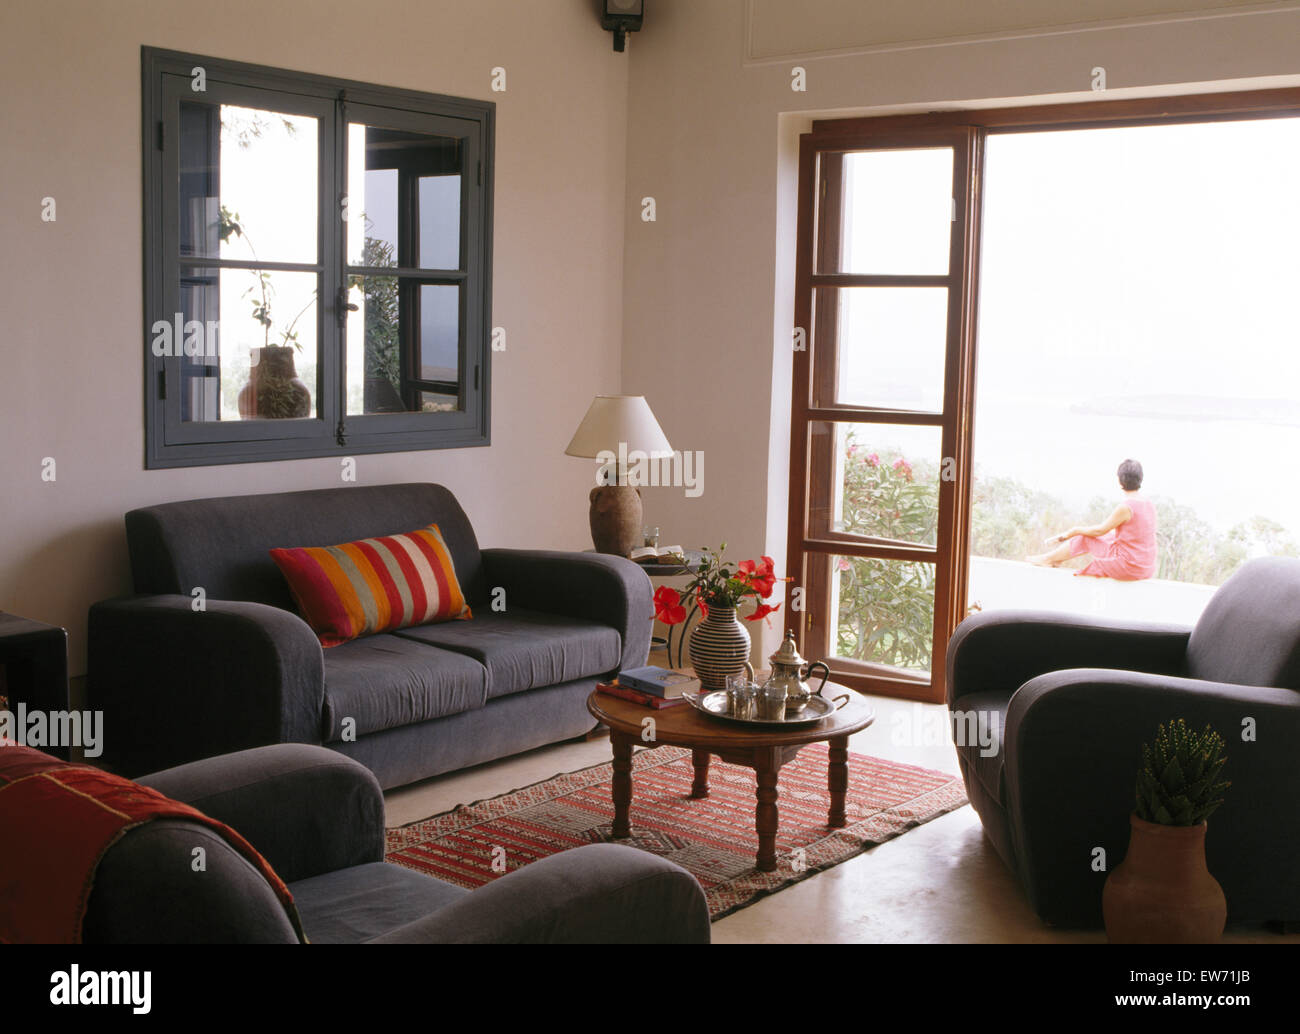 Canapé gris en dessous de la fenêtre interne en salon marocain avec vue à travers les portes en verre de woman sitting on patio Banque D'Images